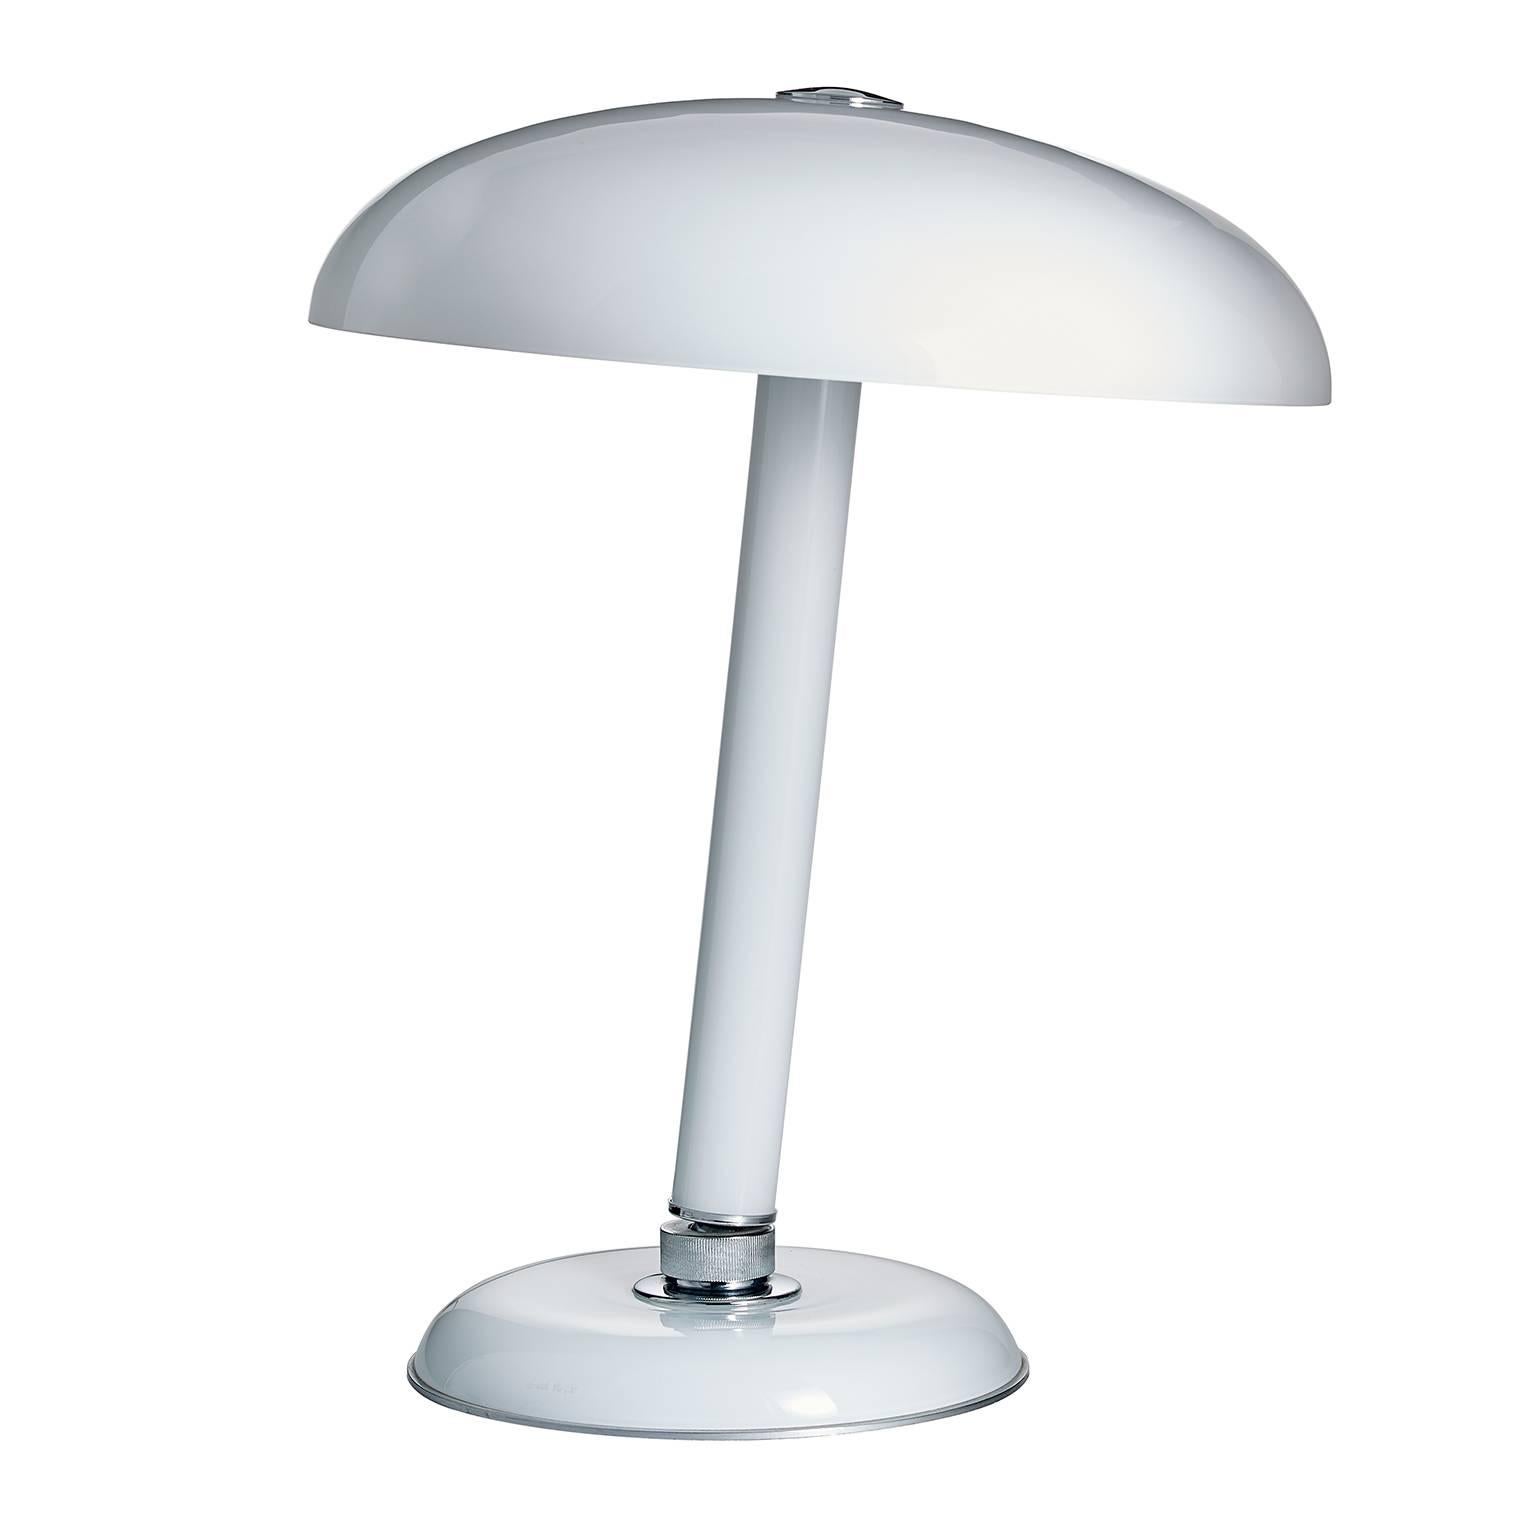 Snodo Carlo Moretti Contemporary Milk White Murano Glass Table Lamp For Sale